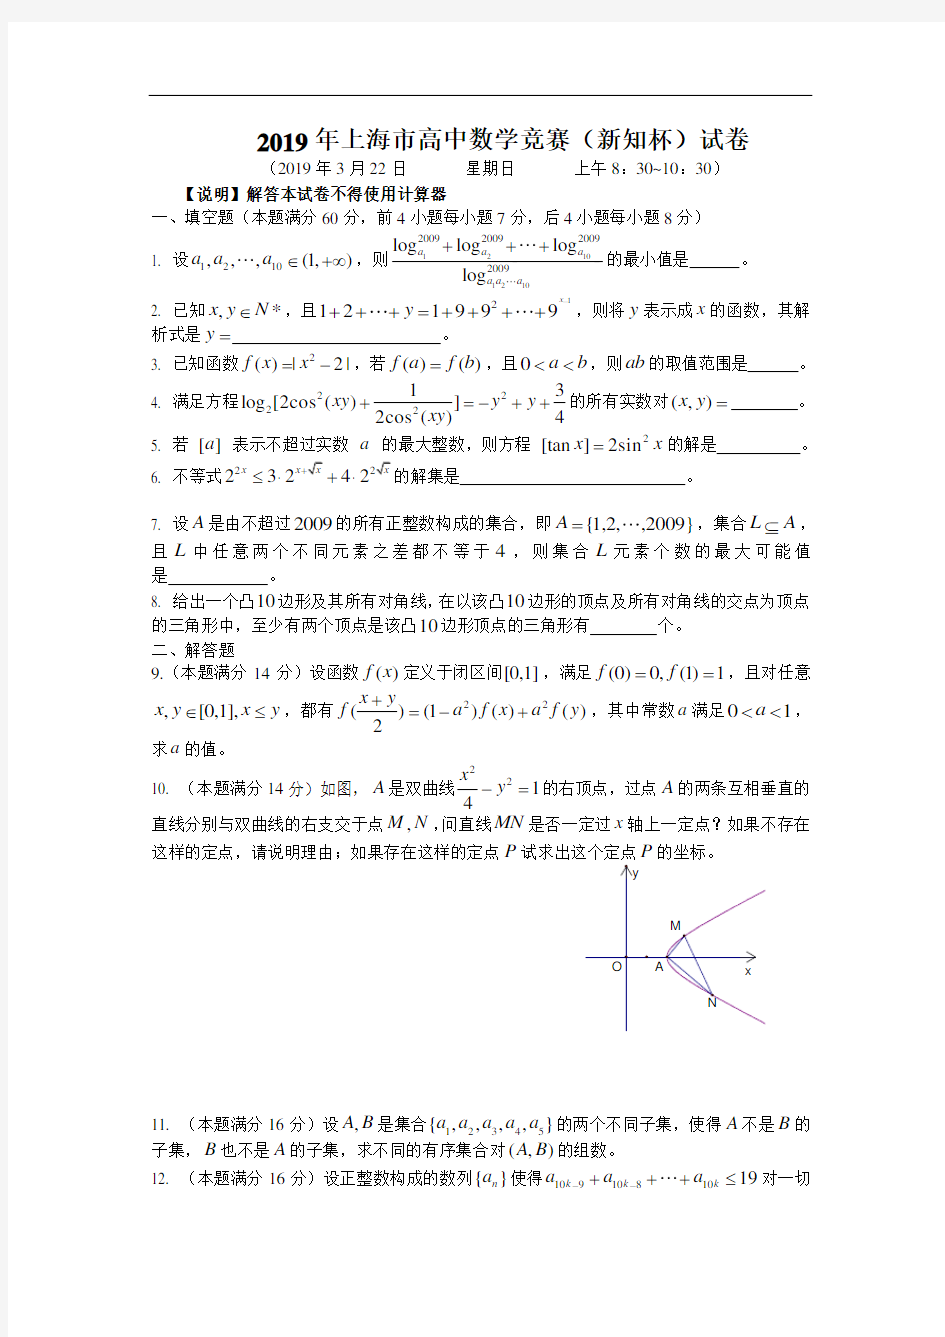 2019年上海市高中数学竞赛(新知杯)试题(附解答)